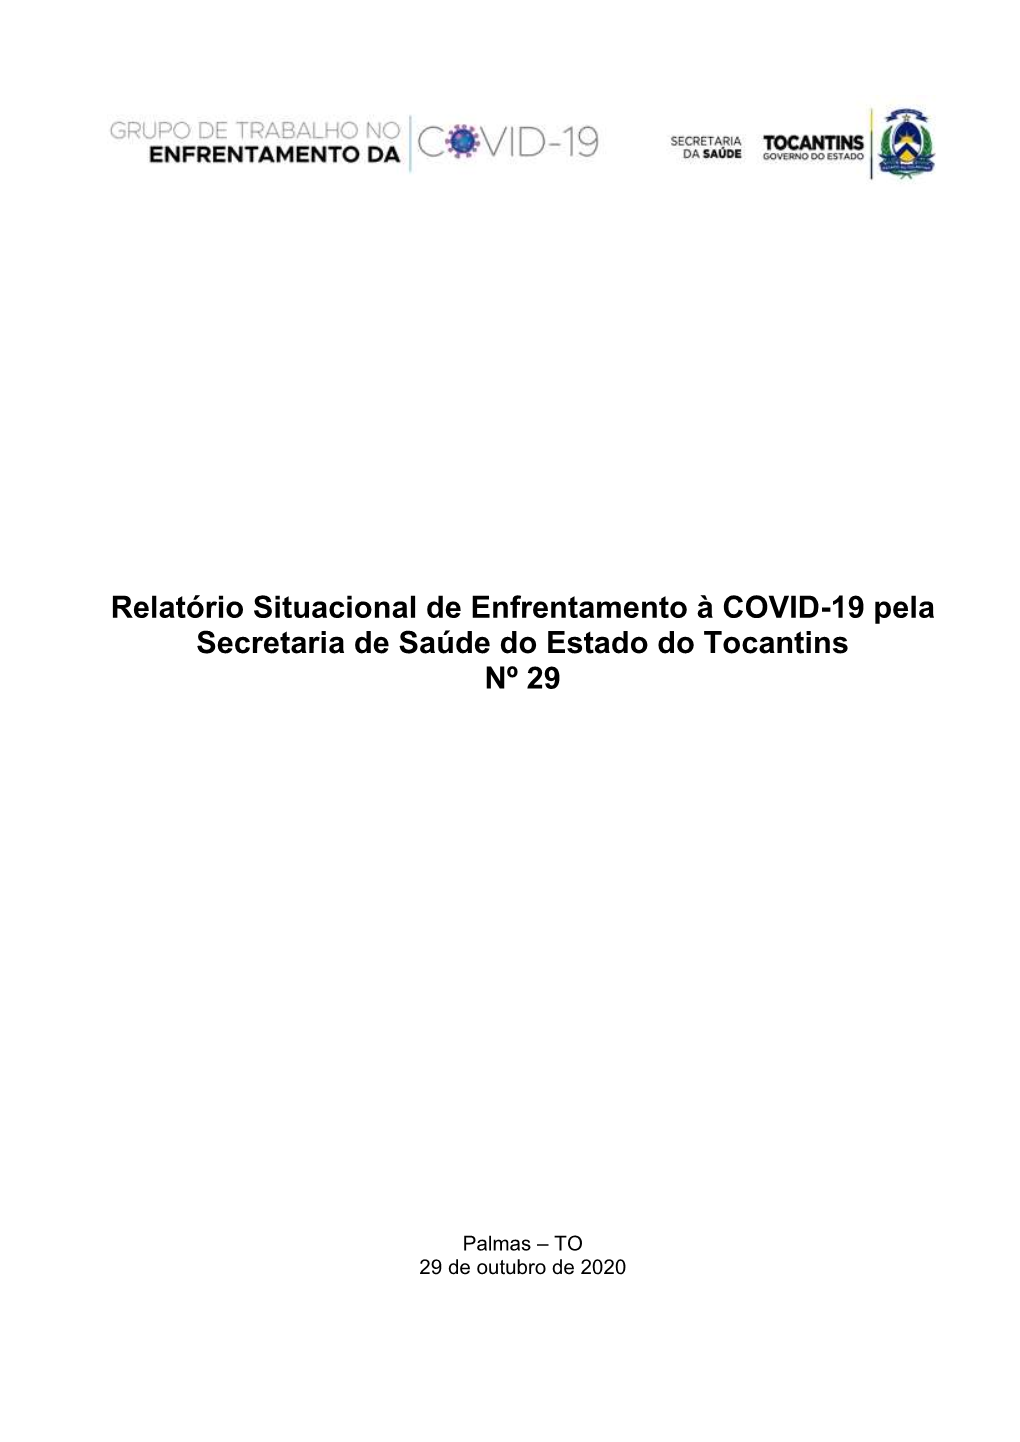 Relatório Situacional De Enfrentamento À COVID-19 Pela Secretaria De Saúde Do Estado Do Tocantins Nº 29